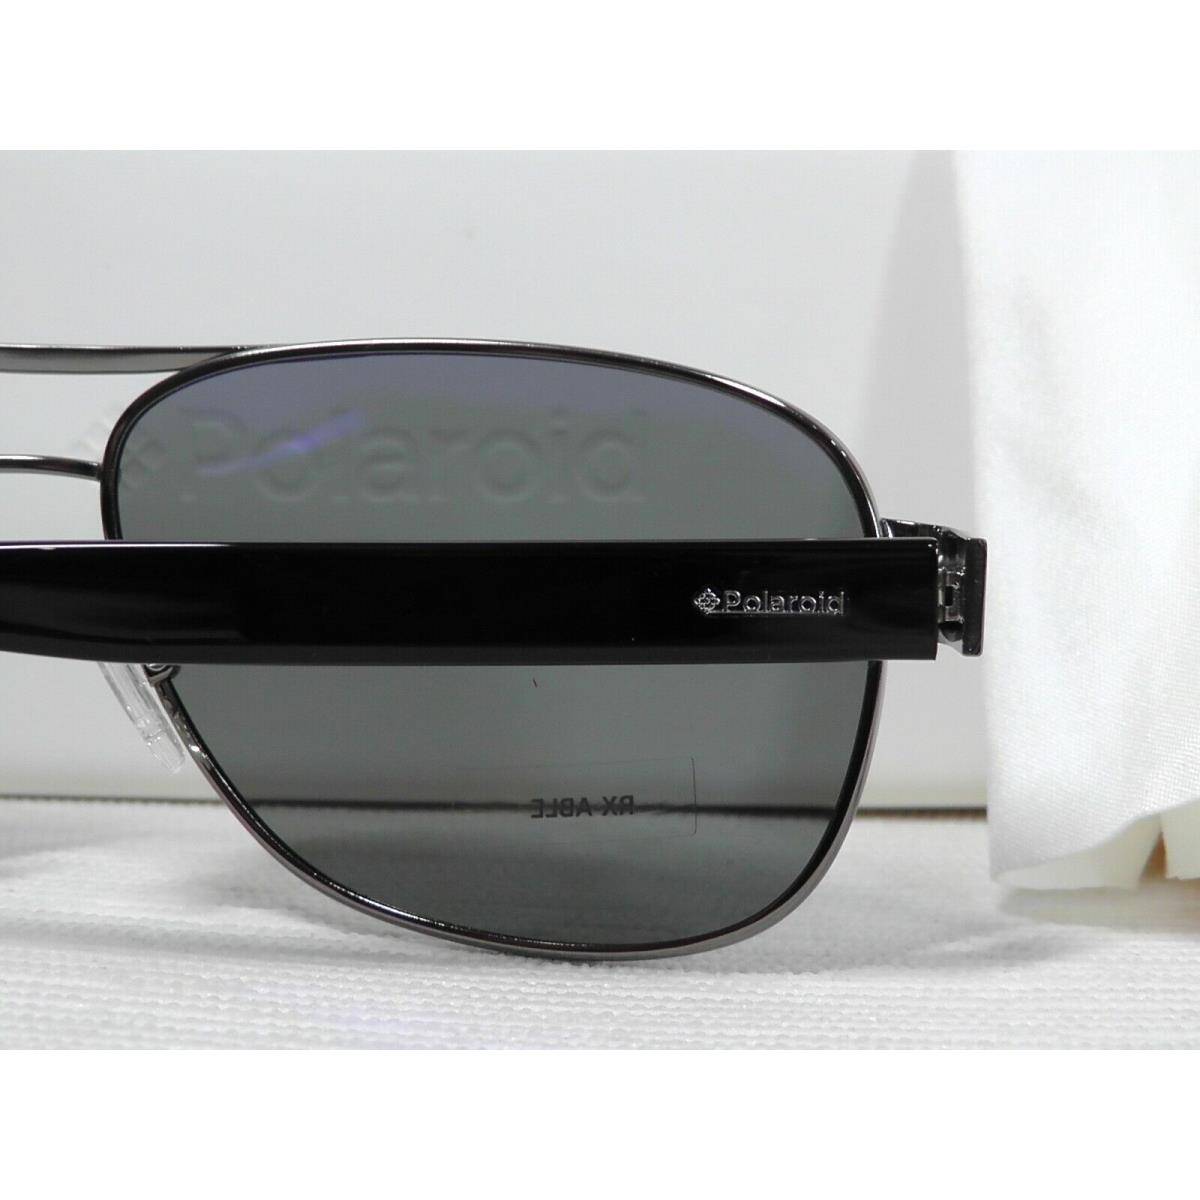 Polaroid sunglasses Aviator - Black/Ruthenium Frame, Gray Lens 6